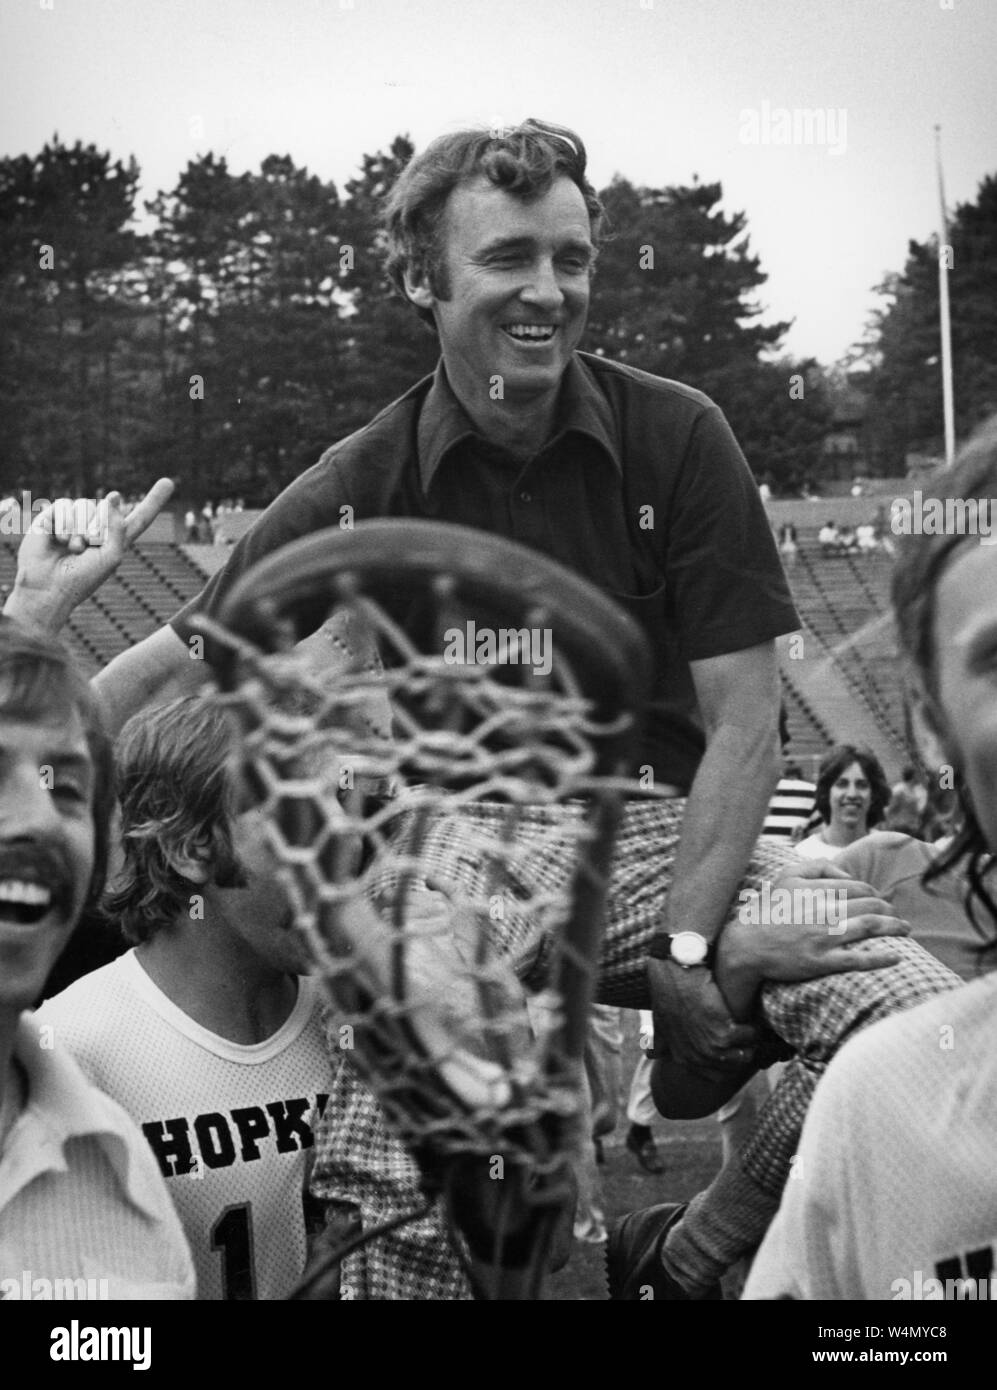 Johns Hopkins University Hall of Fame lacrosse coach Bob Scott sorrisi come egli si appoggia sulle spalle dei giocatori per la sua squadra di lacrosse nella celebrazione presso la Johns Hopkins University, Baltimora, Maryland, 1976. Dalla storica collezione di fotografie. () Foto Stock